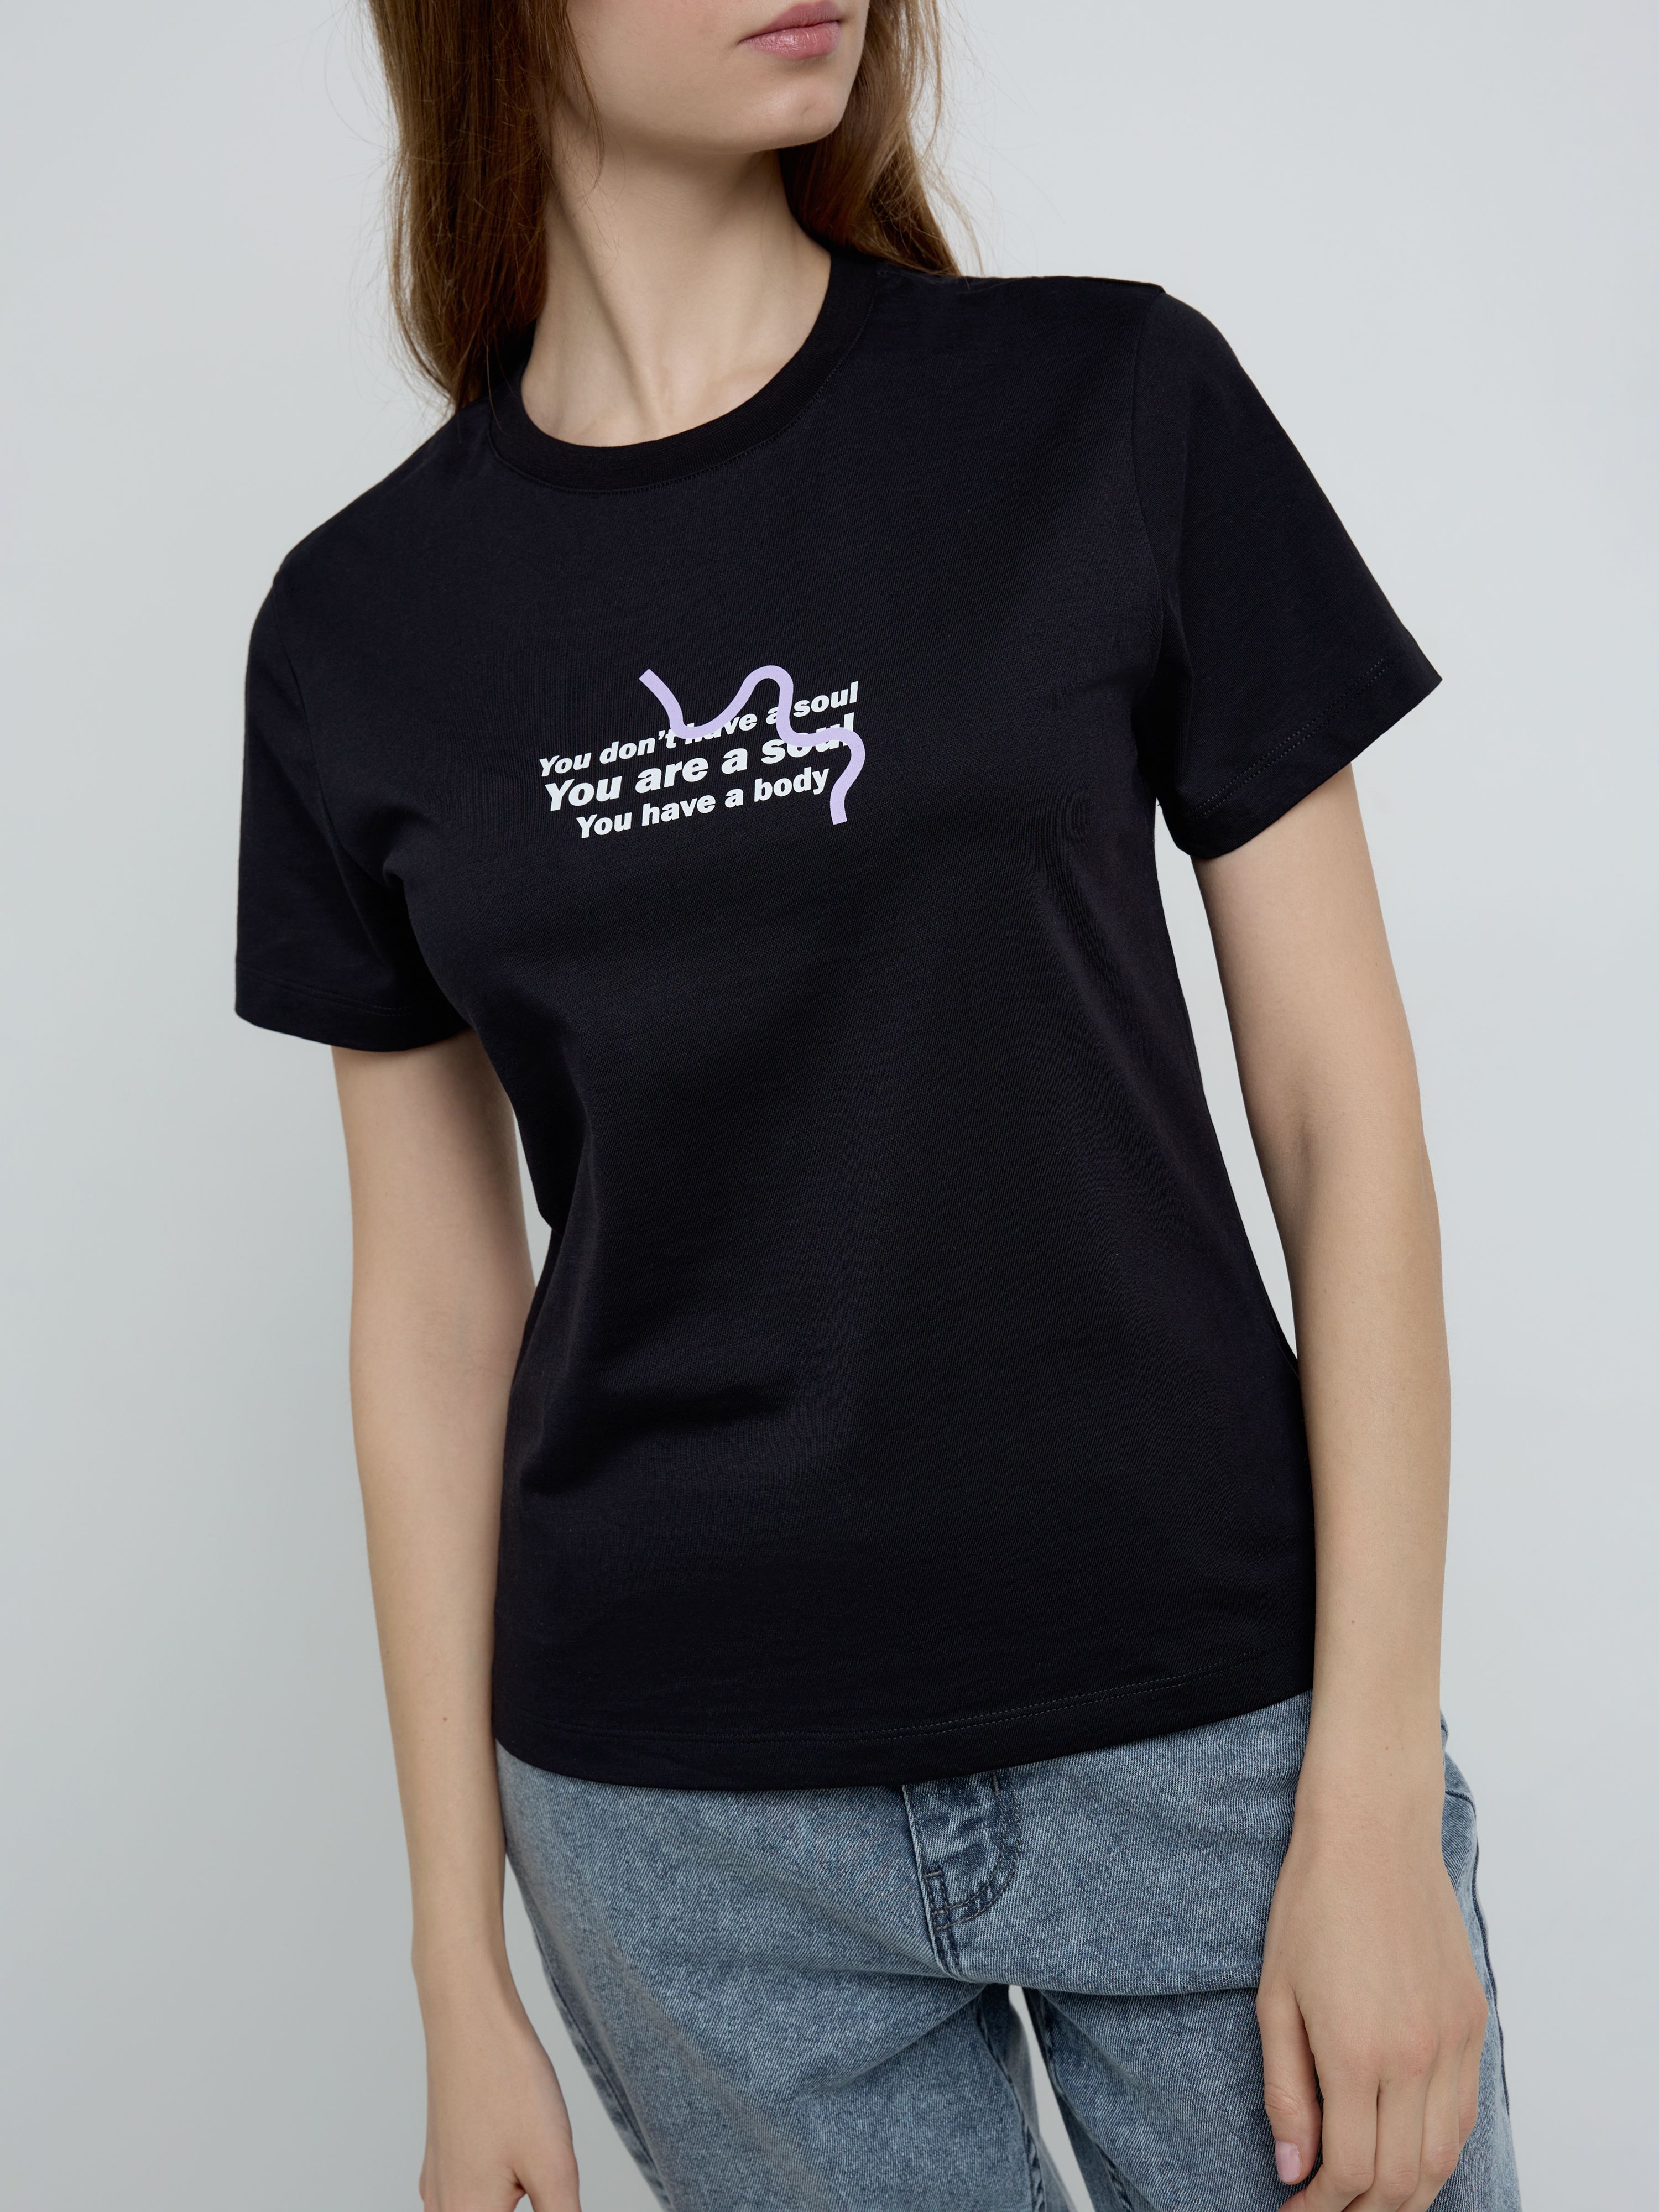 Базовая футболка из хлопка с рисунком «A soul» LD 2137 Conte ⭐️, цвет black, размер 170-100/xl